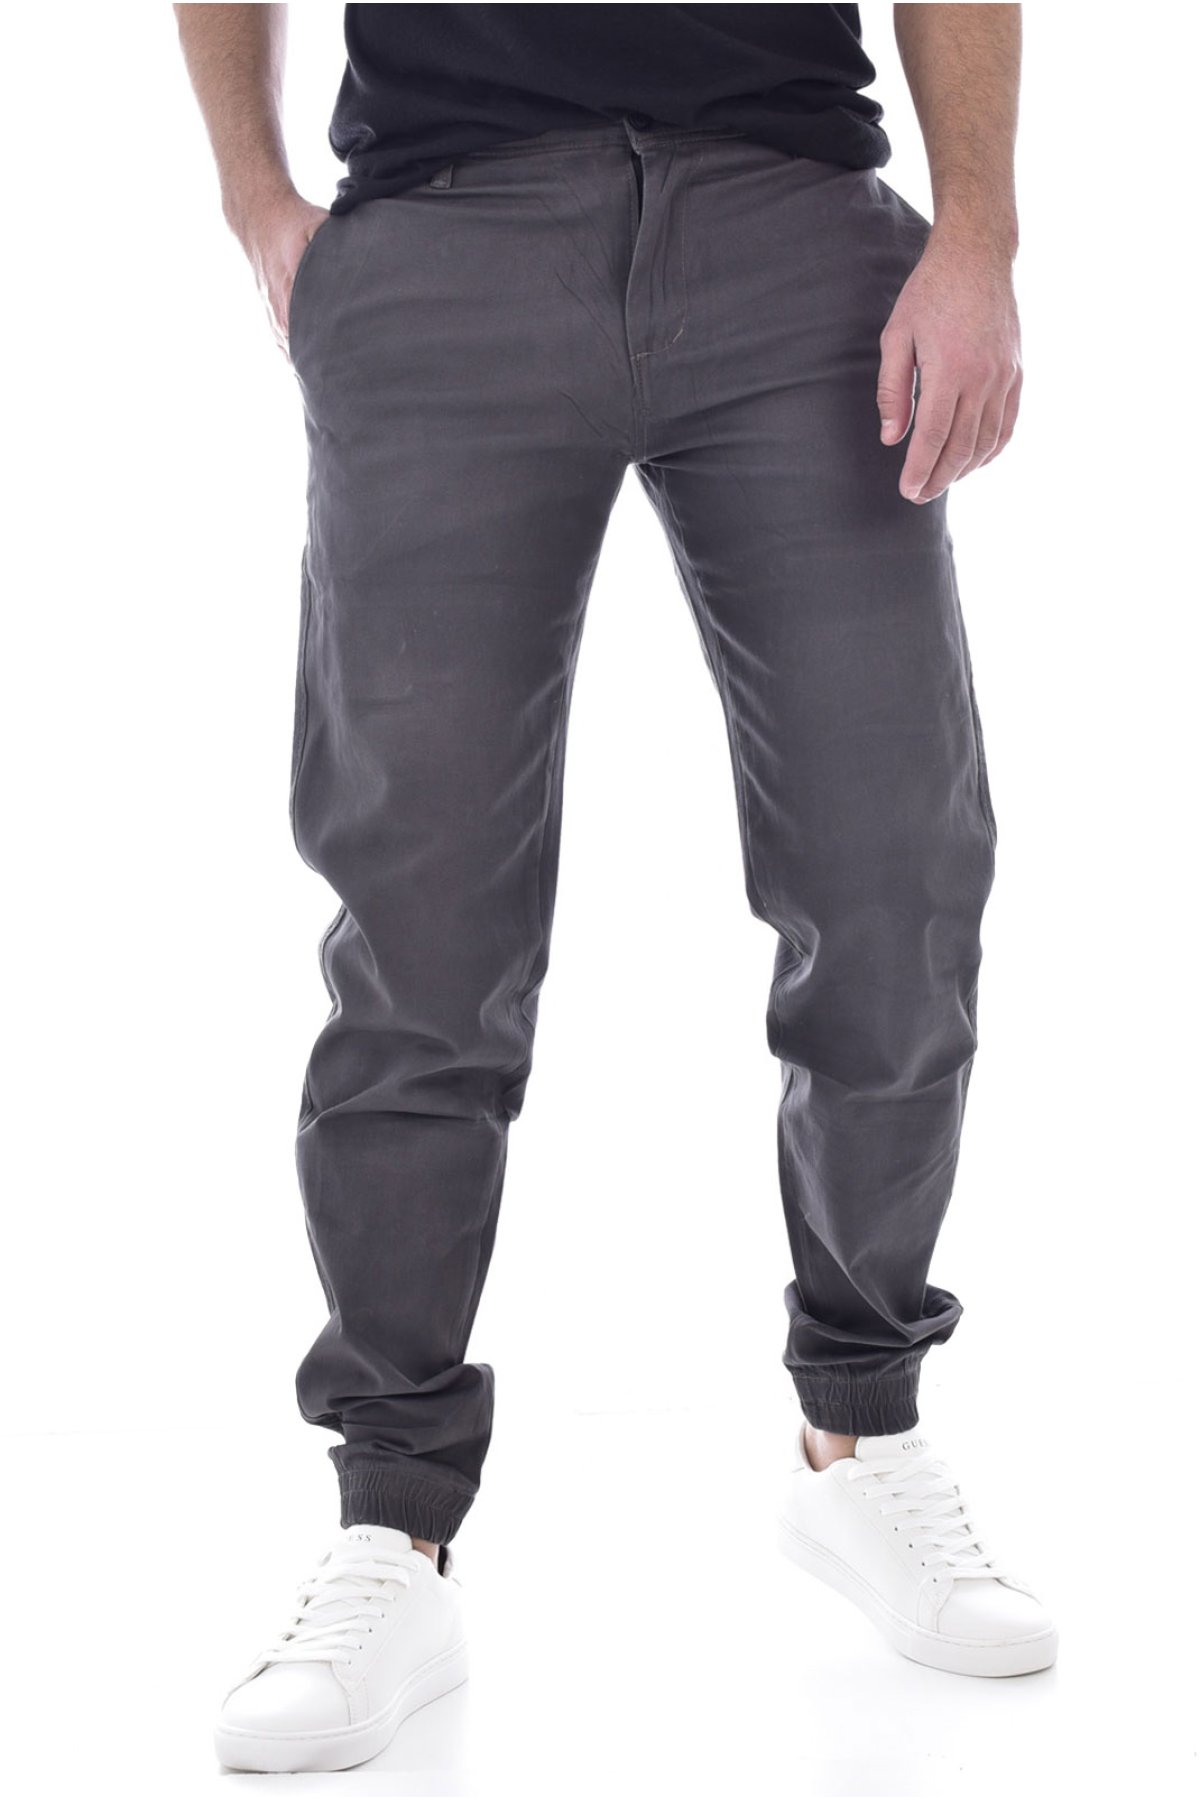 Giani 5 D191 kalhoty šedé